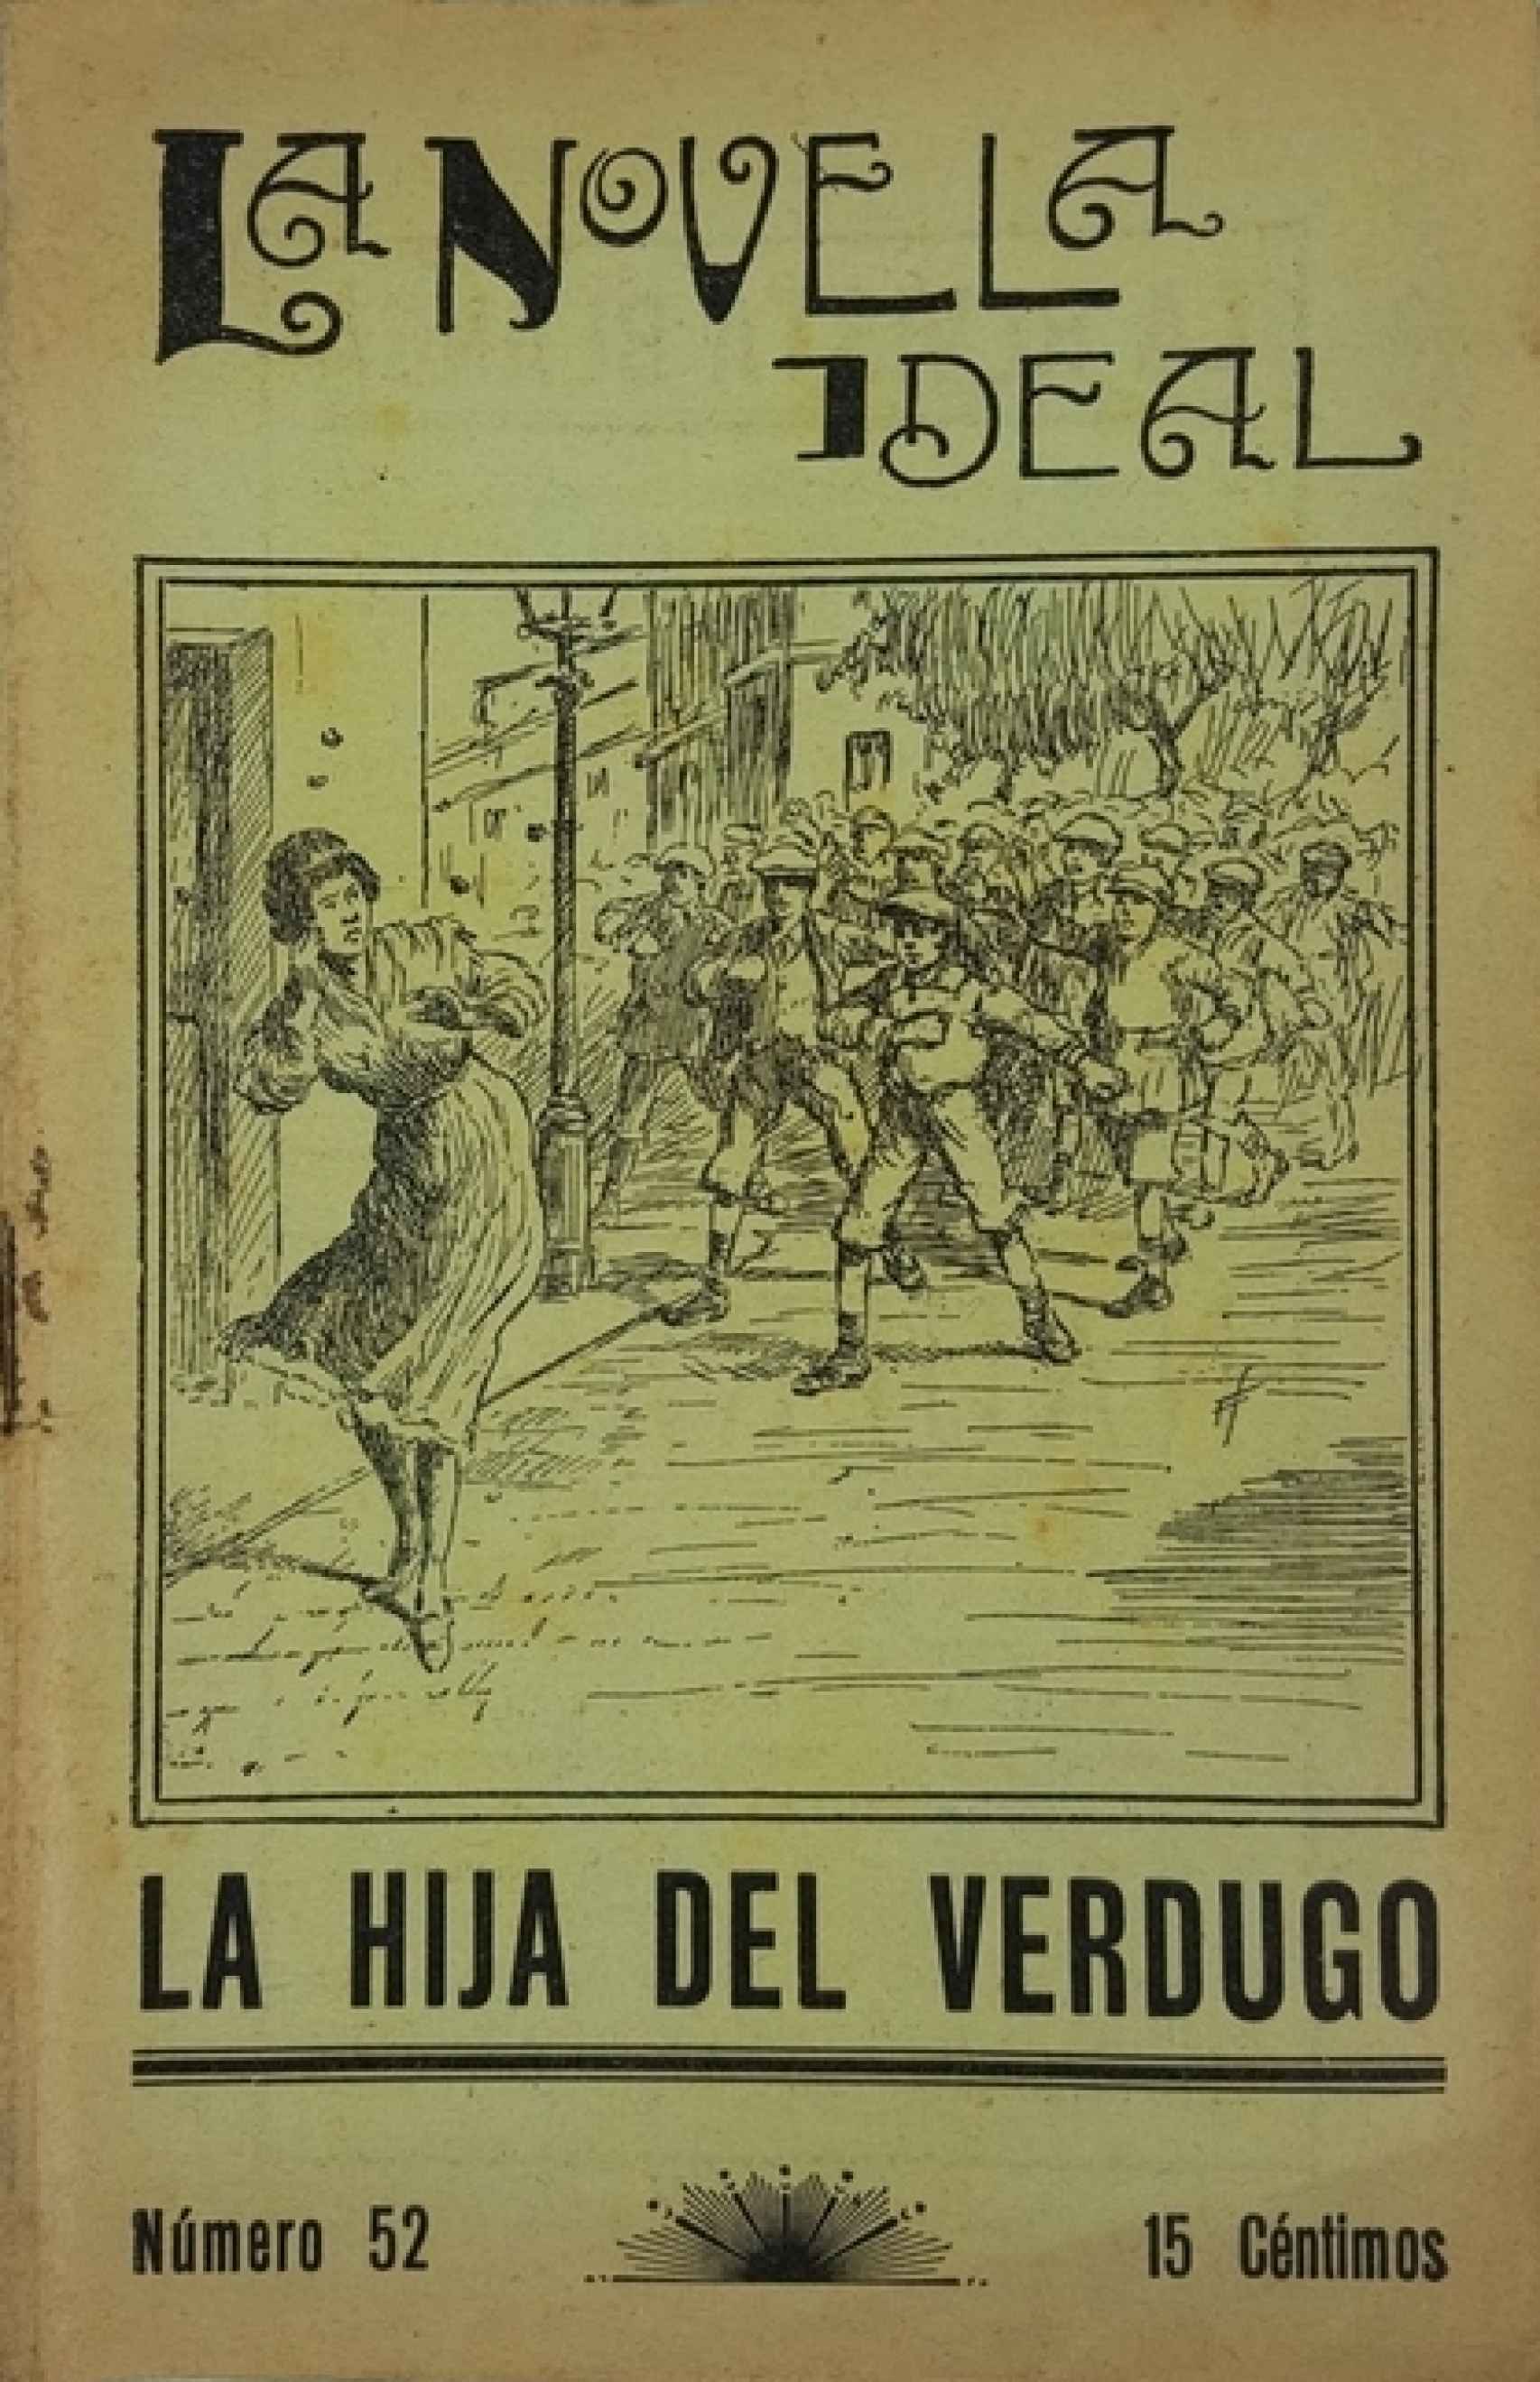 'La hija del verdugo', escrita por Federica Montseny y publicada en 'La Novela Ideal' en 1927.